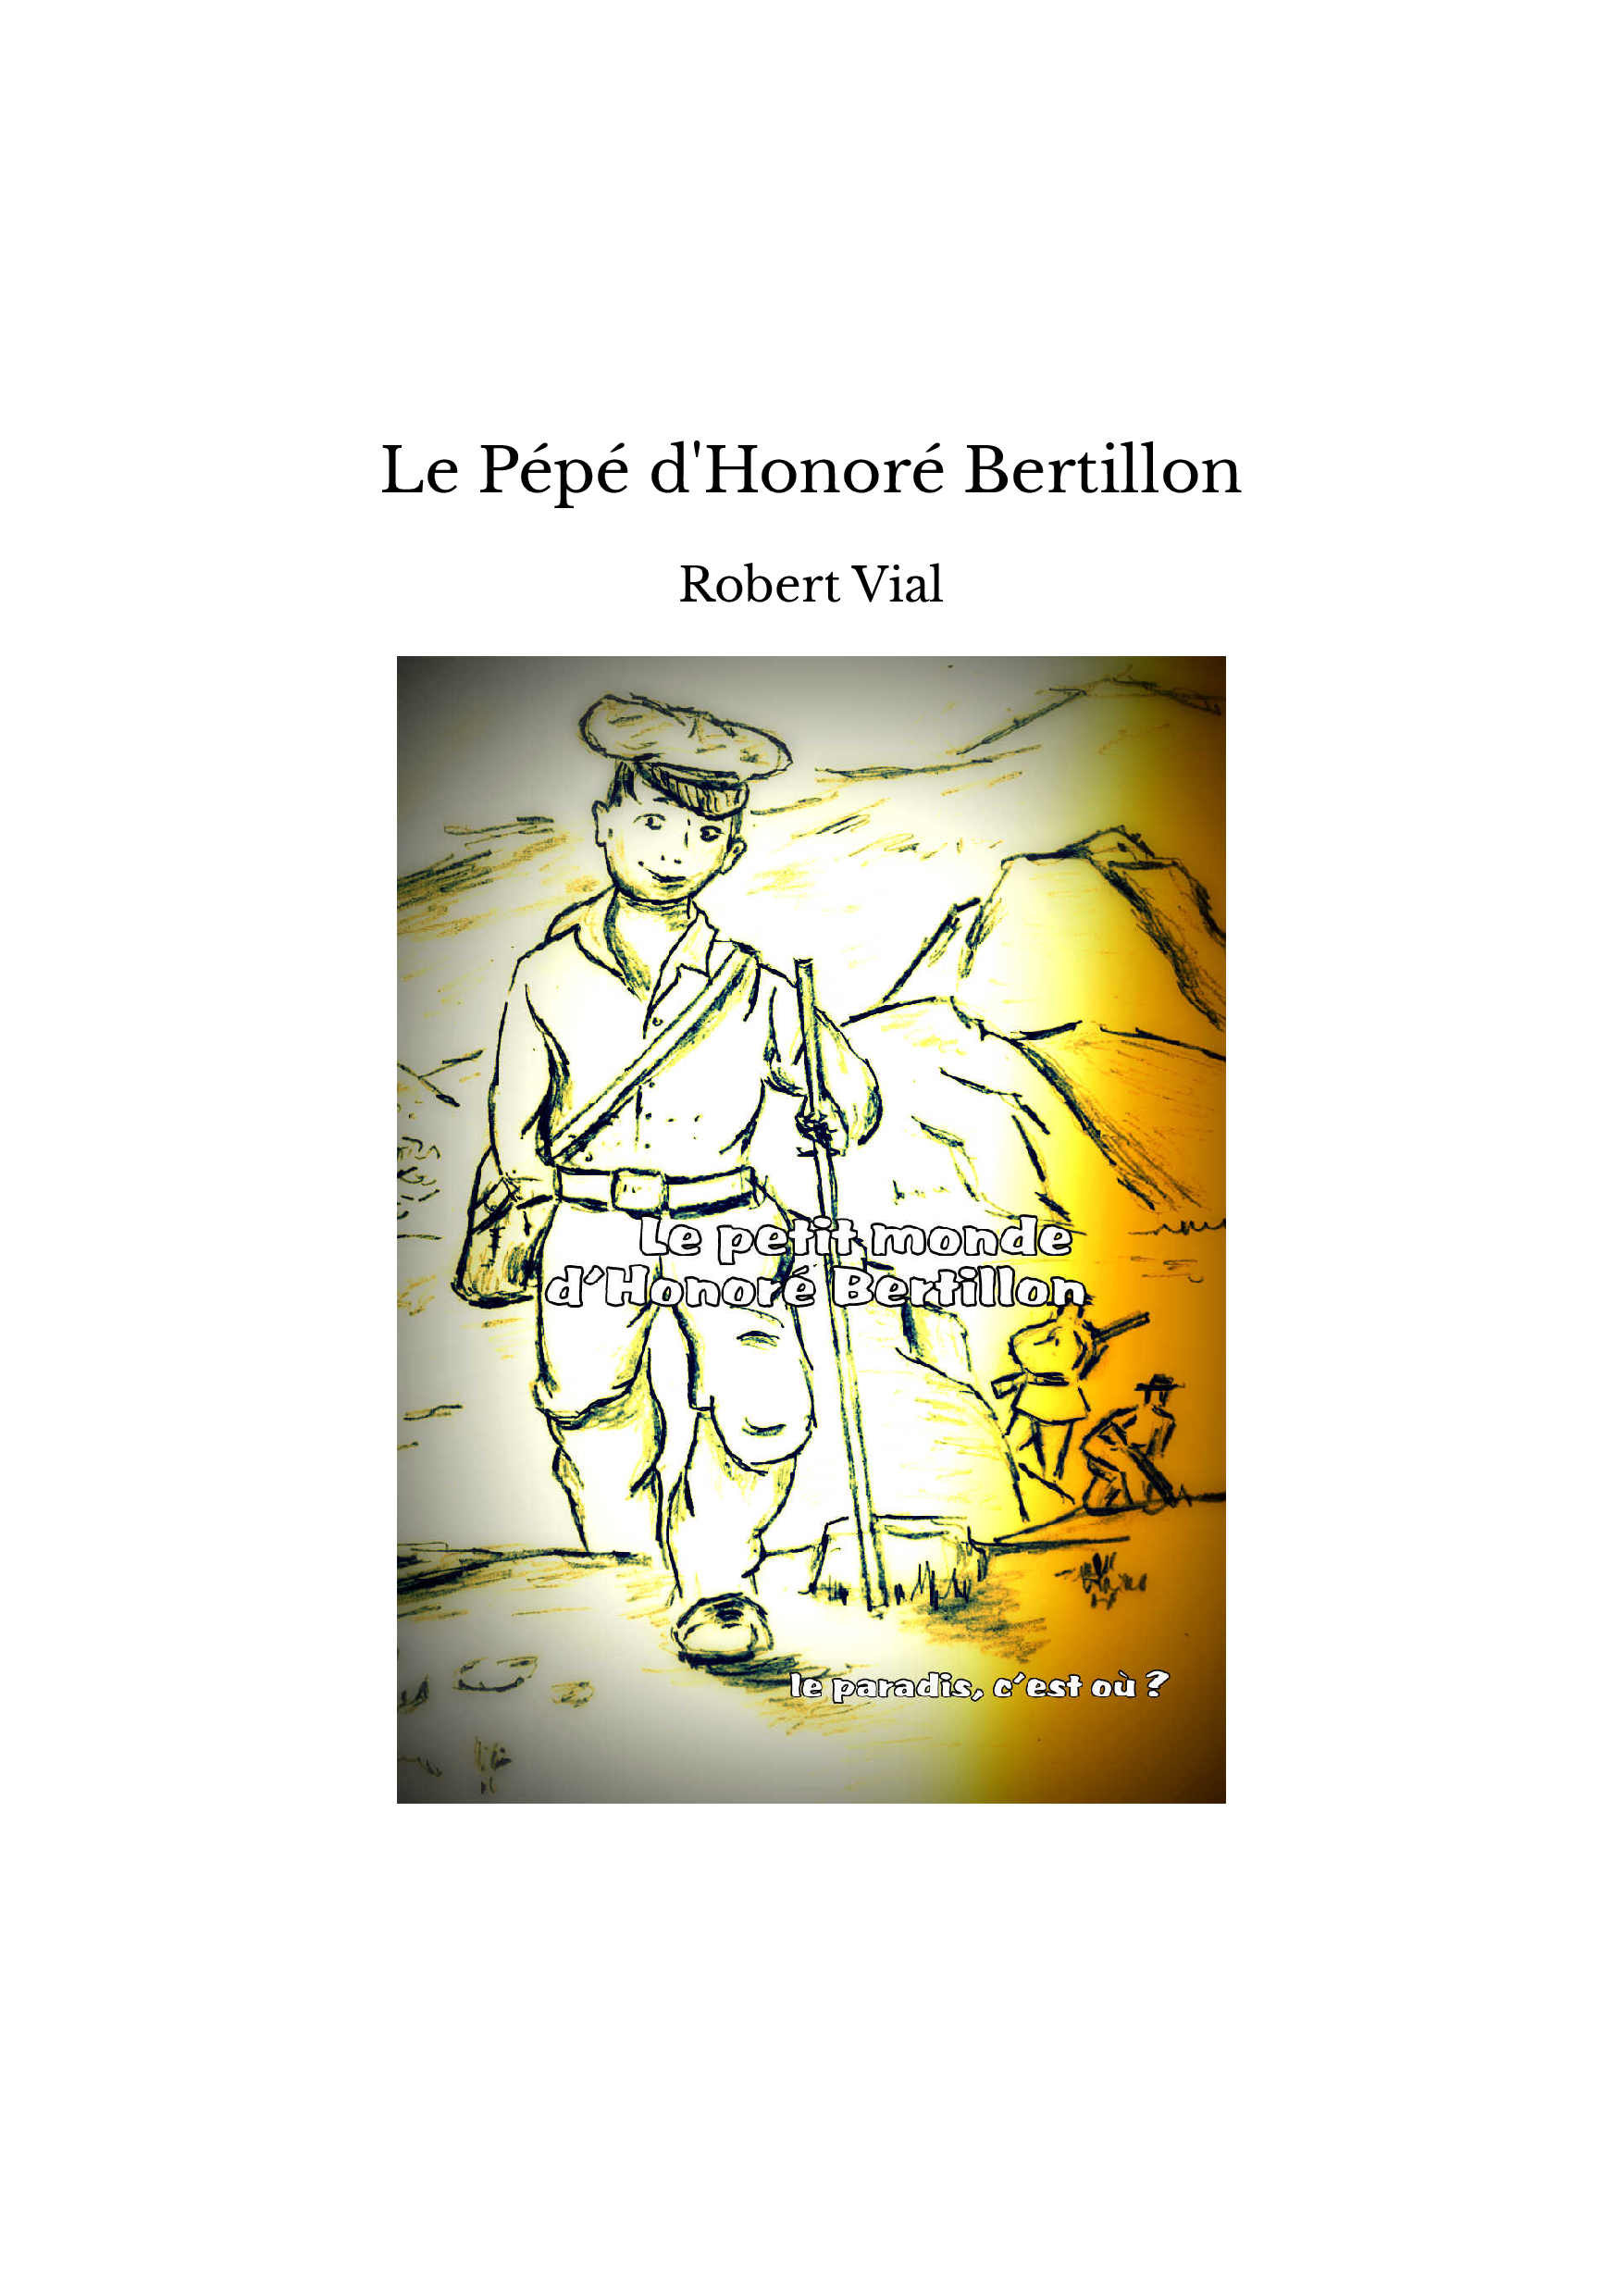 Le Pépé d'Honoré Bertillon